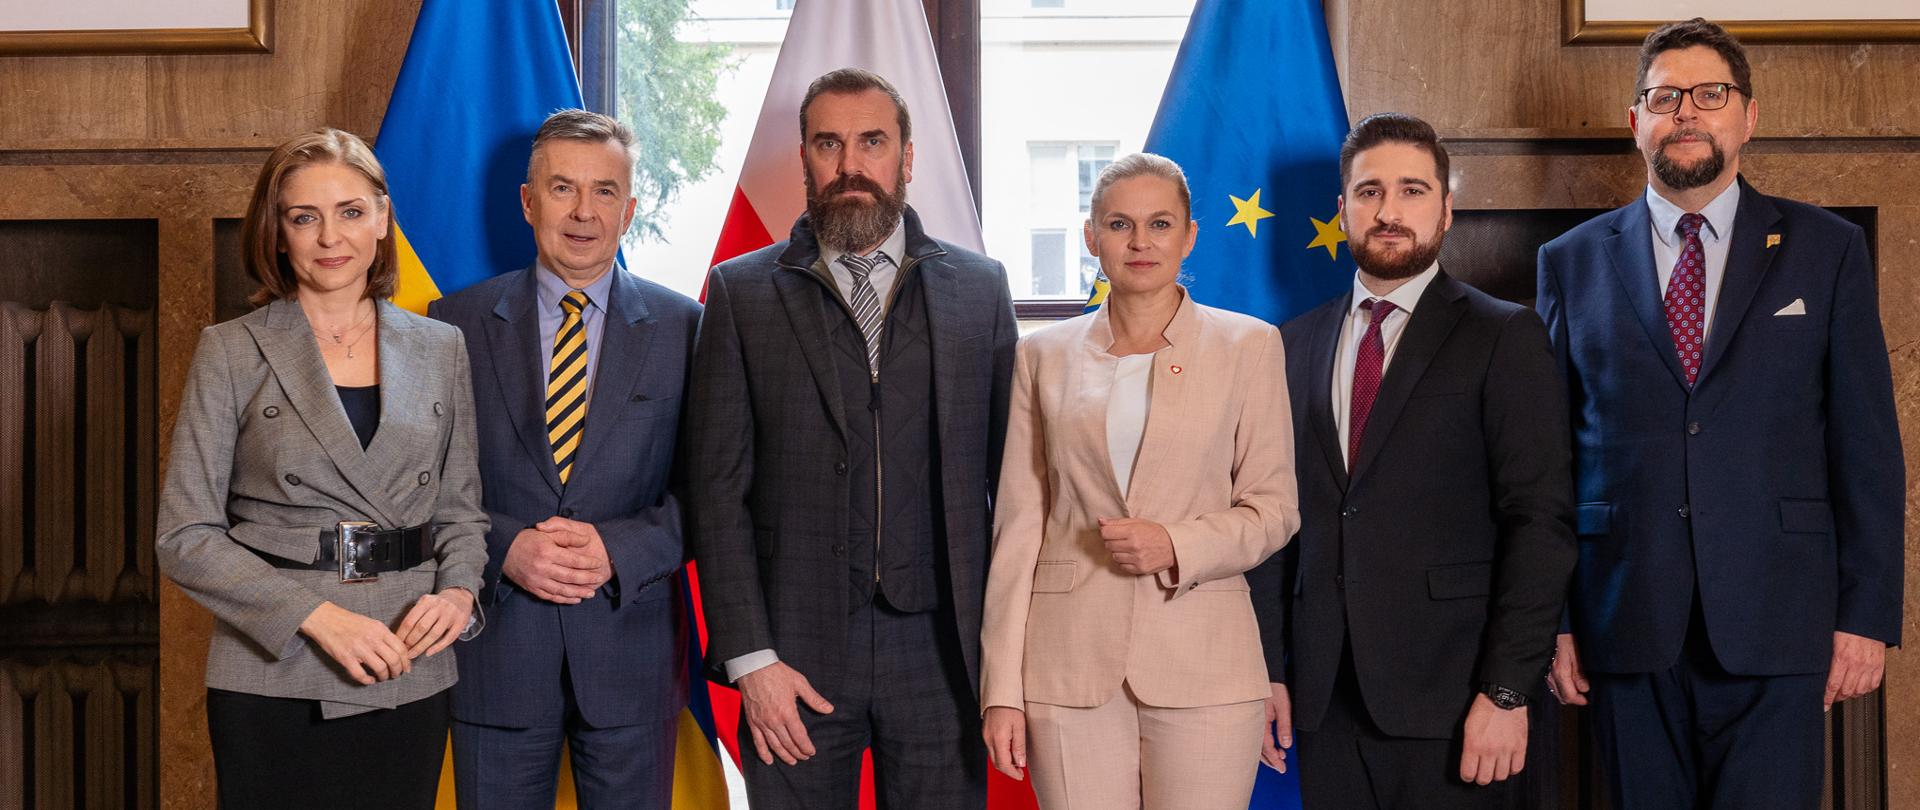 Zdjęcie zbiorowe, na tle okna stoją i flag Polski, Ukrainy i UE stoi minister Nowacka, minister Wieczorek i wiceminister Mucha oraz trzech mężczyzn w garniturach